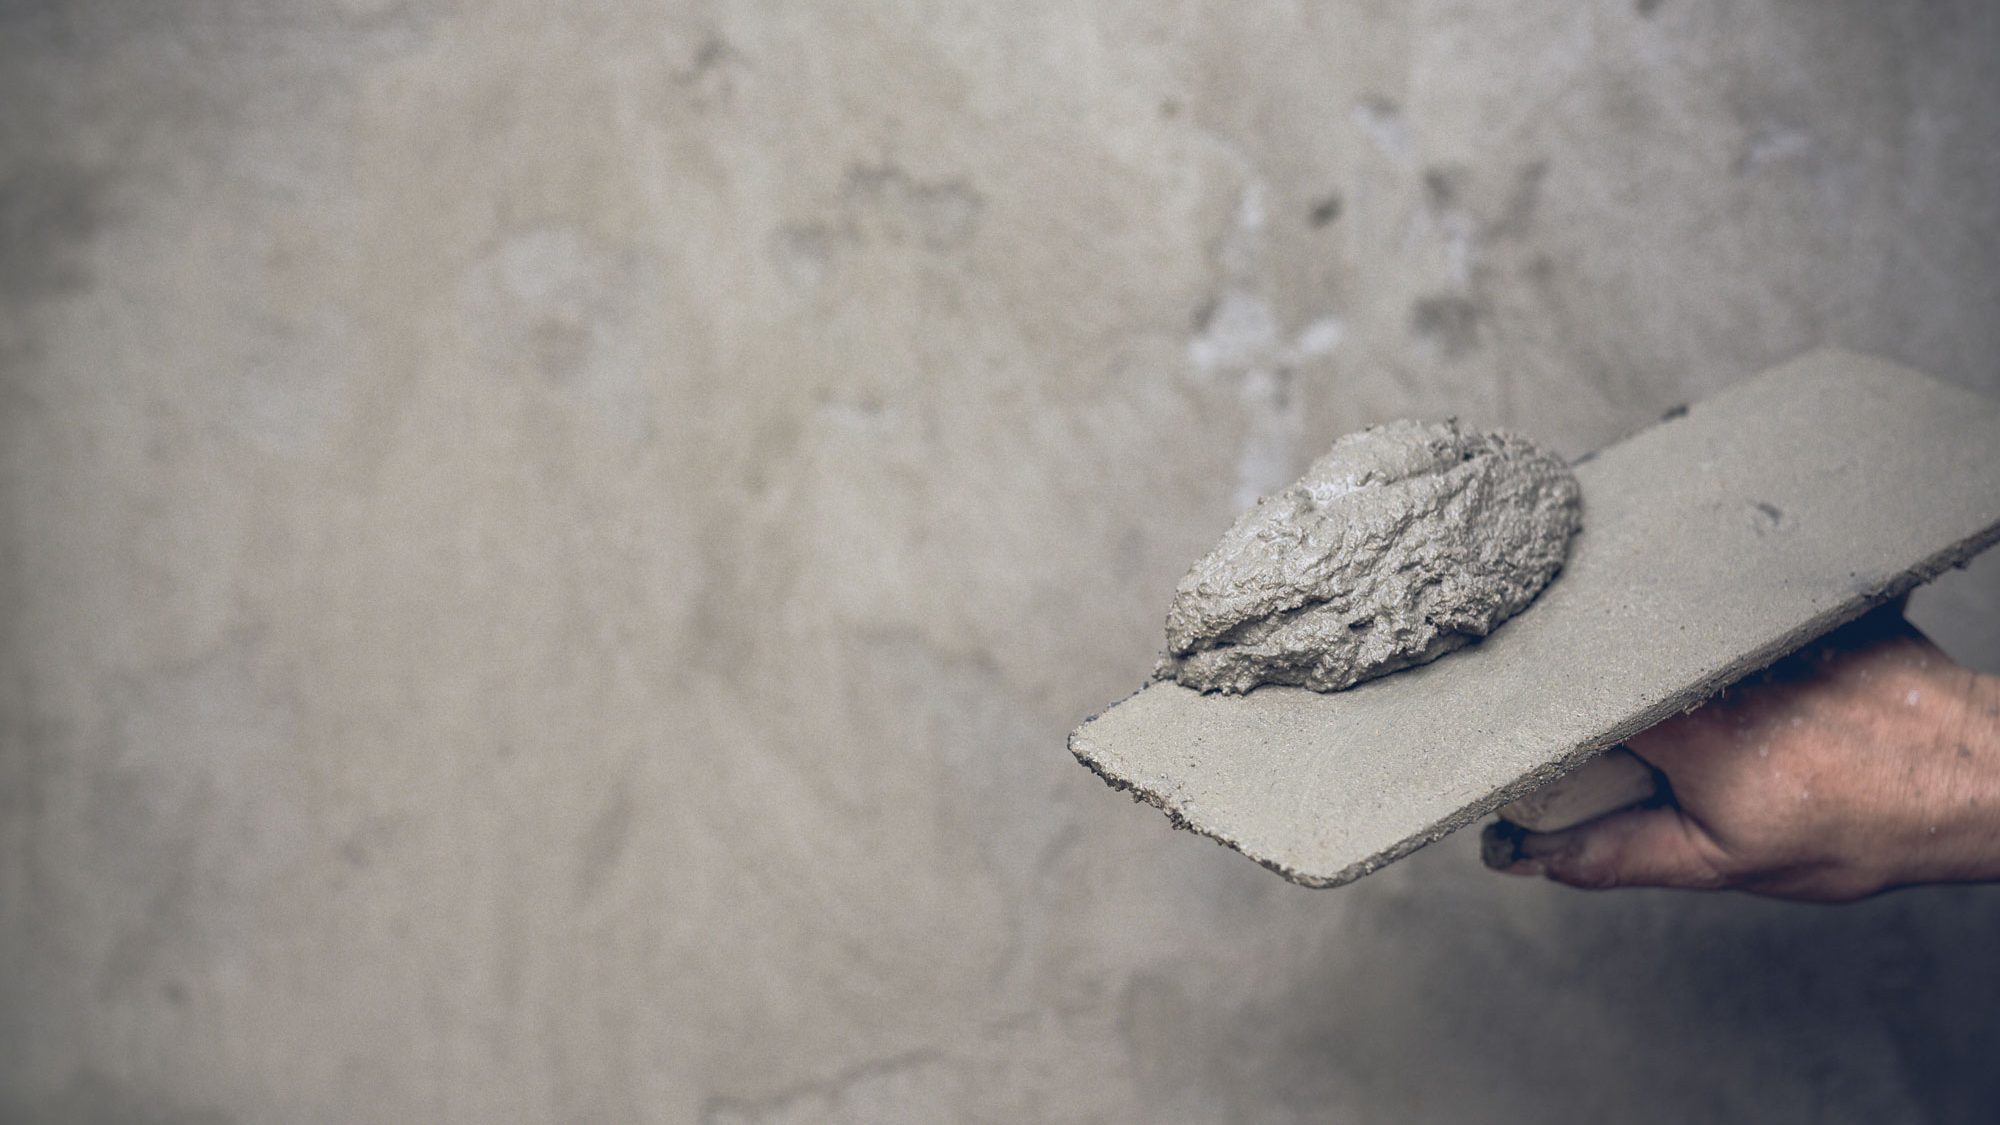 Detalle de una mano sujetando una espátula con cemento